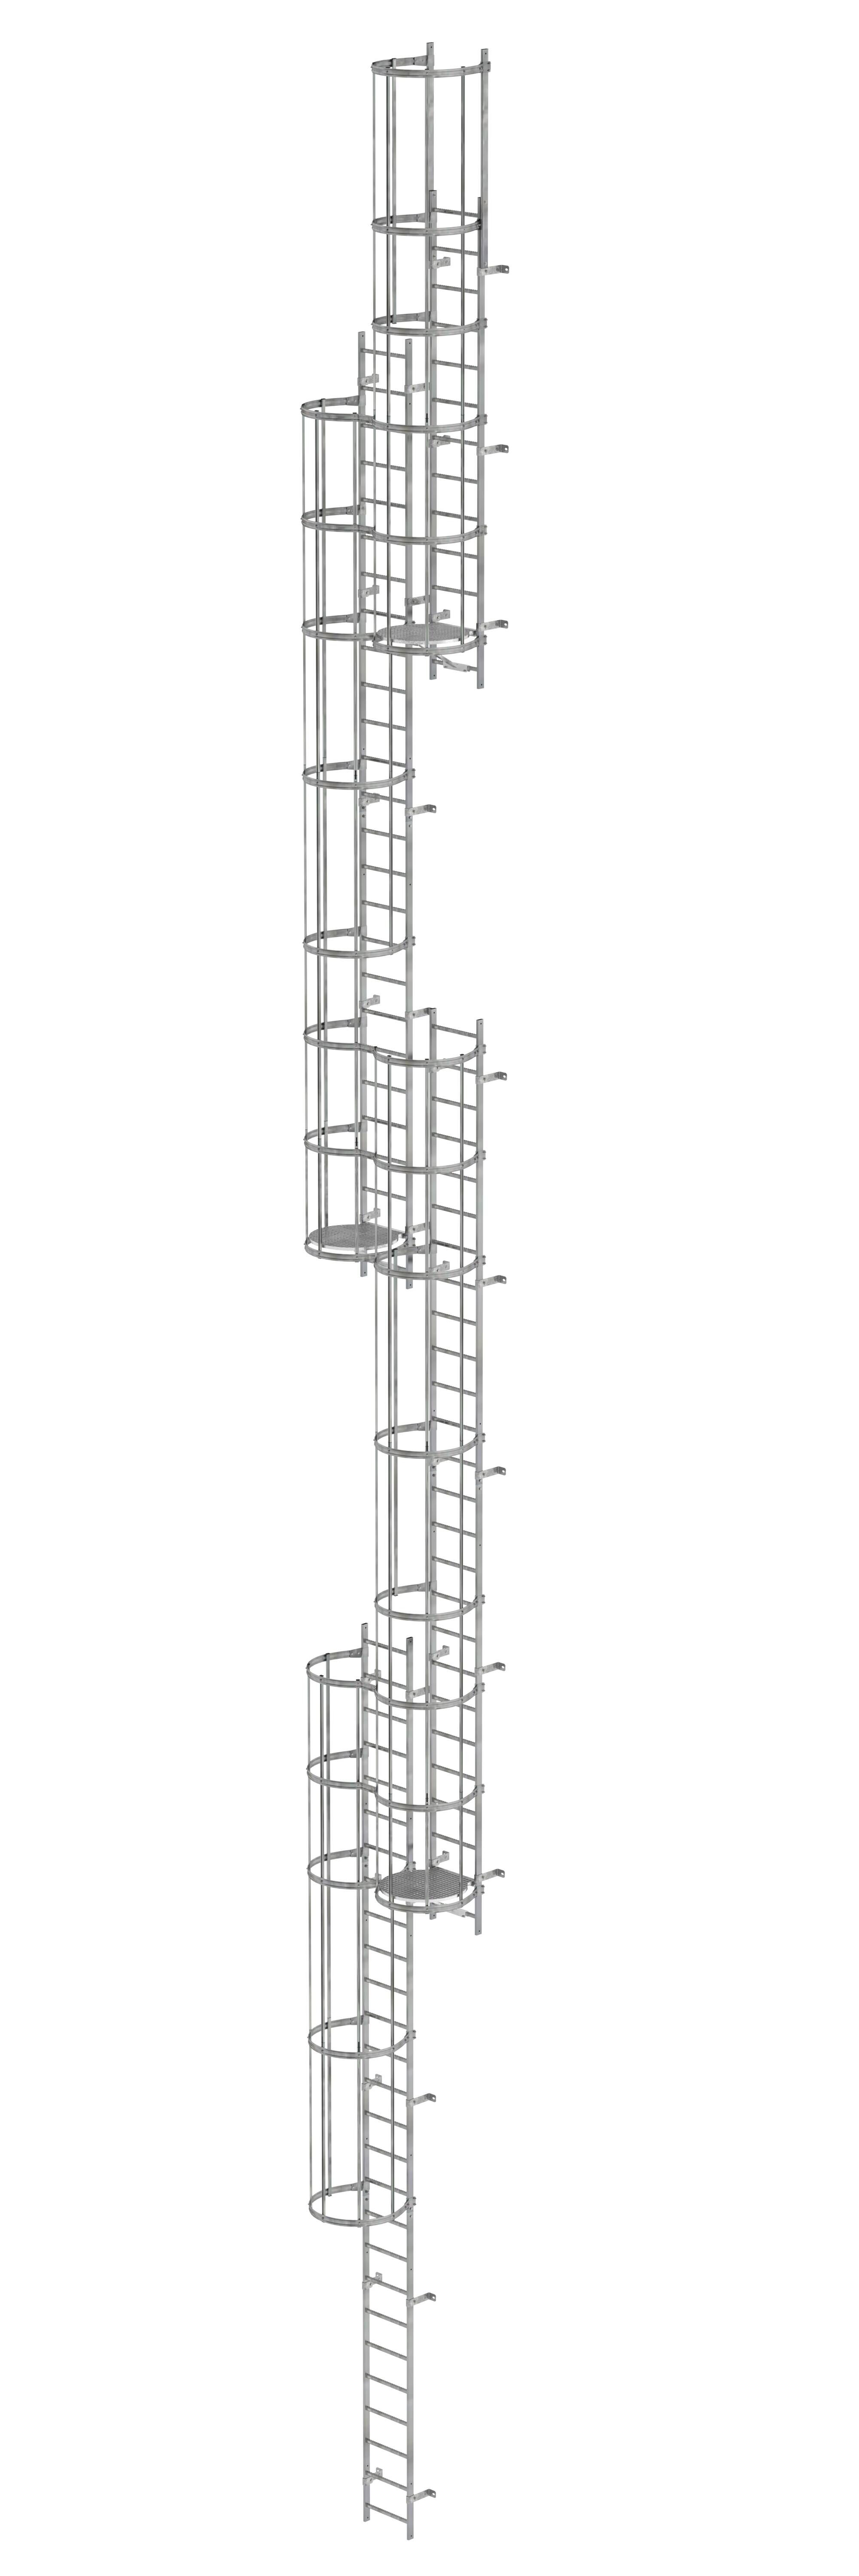 Mehrzügige Steigleiter mit Rückenschutz (Notleiter) Stahl verzinkt 19,96m